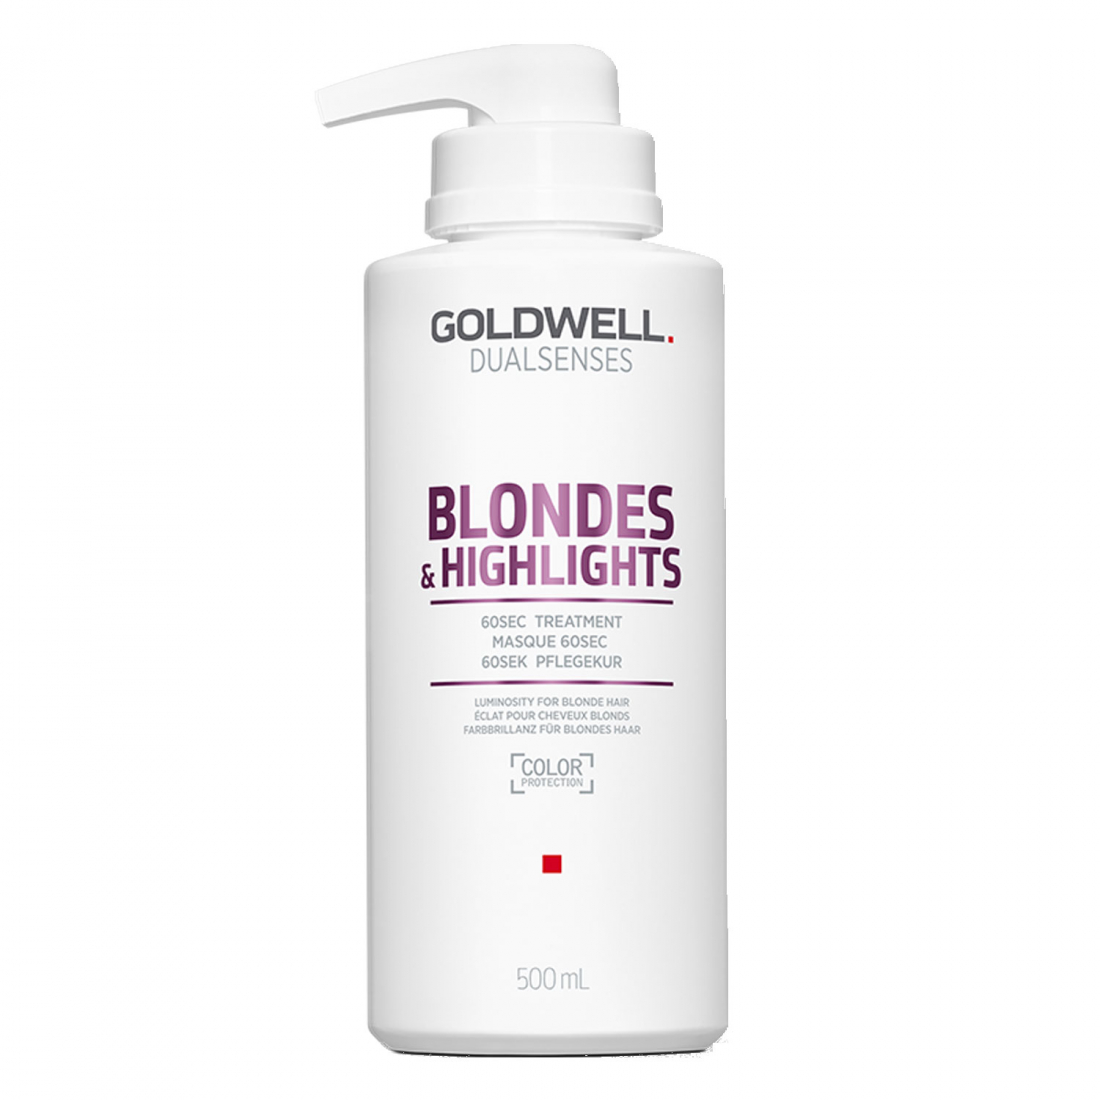 'Blondes & Highlights 60 Sec' Hair Treatment - 500 ml